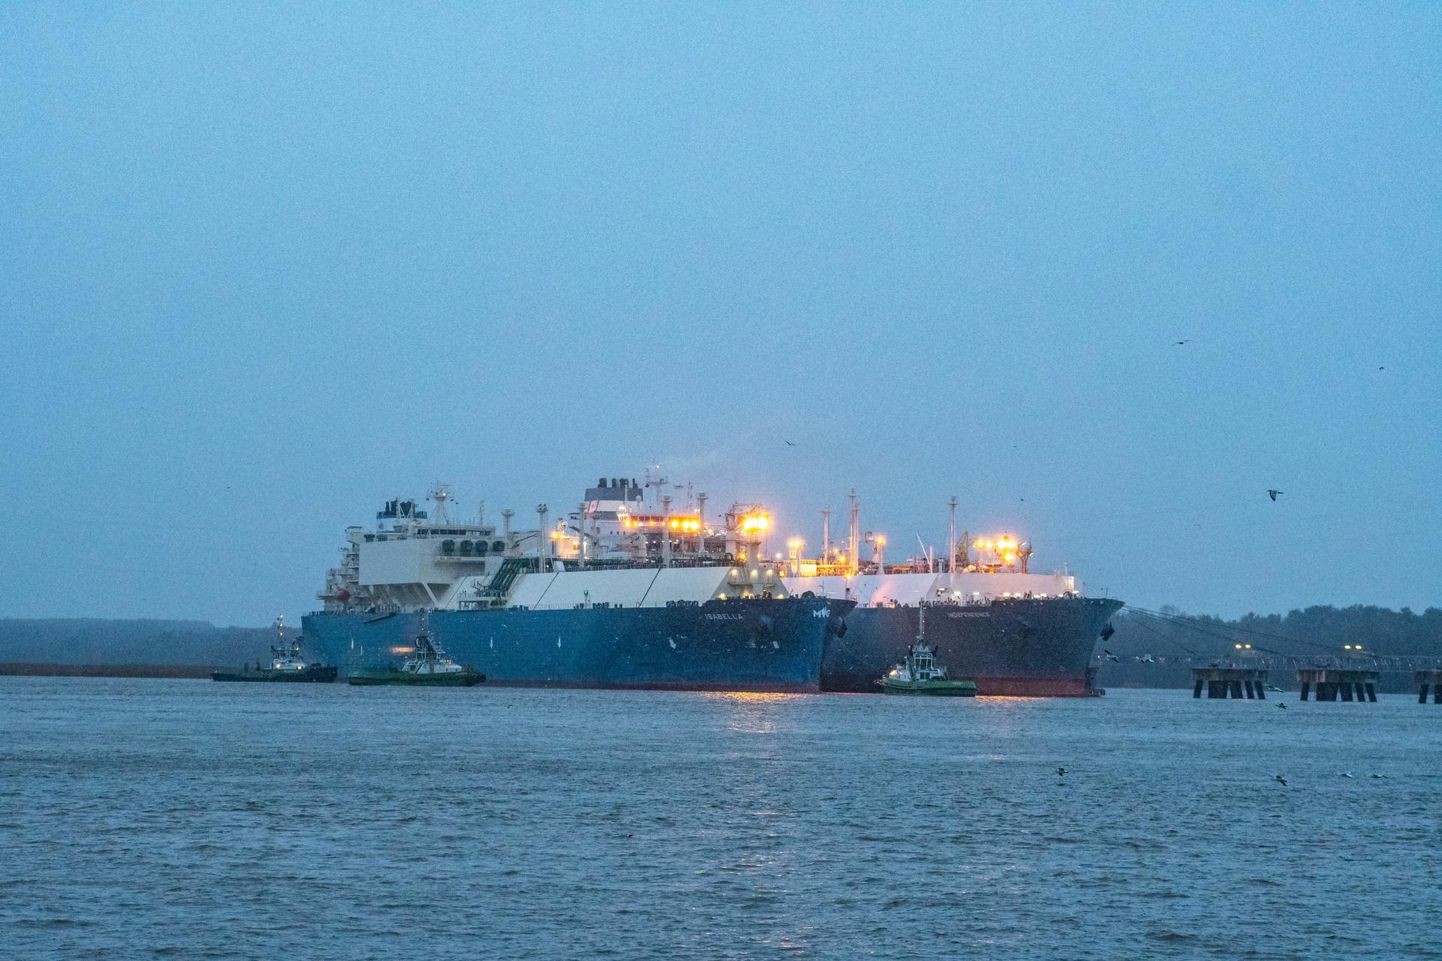 Equinori gaasitanker Isabella, mis tõi 17. jaanuaril Eesti Gaasi tellimusel Klaipėda sadamasse selle aasta esimese laevatäie Ameerika Ühendriikide päritolu veeldatud maagaasi (LNG). Pilt on illustreeriv.